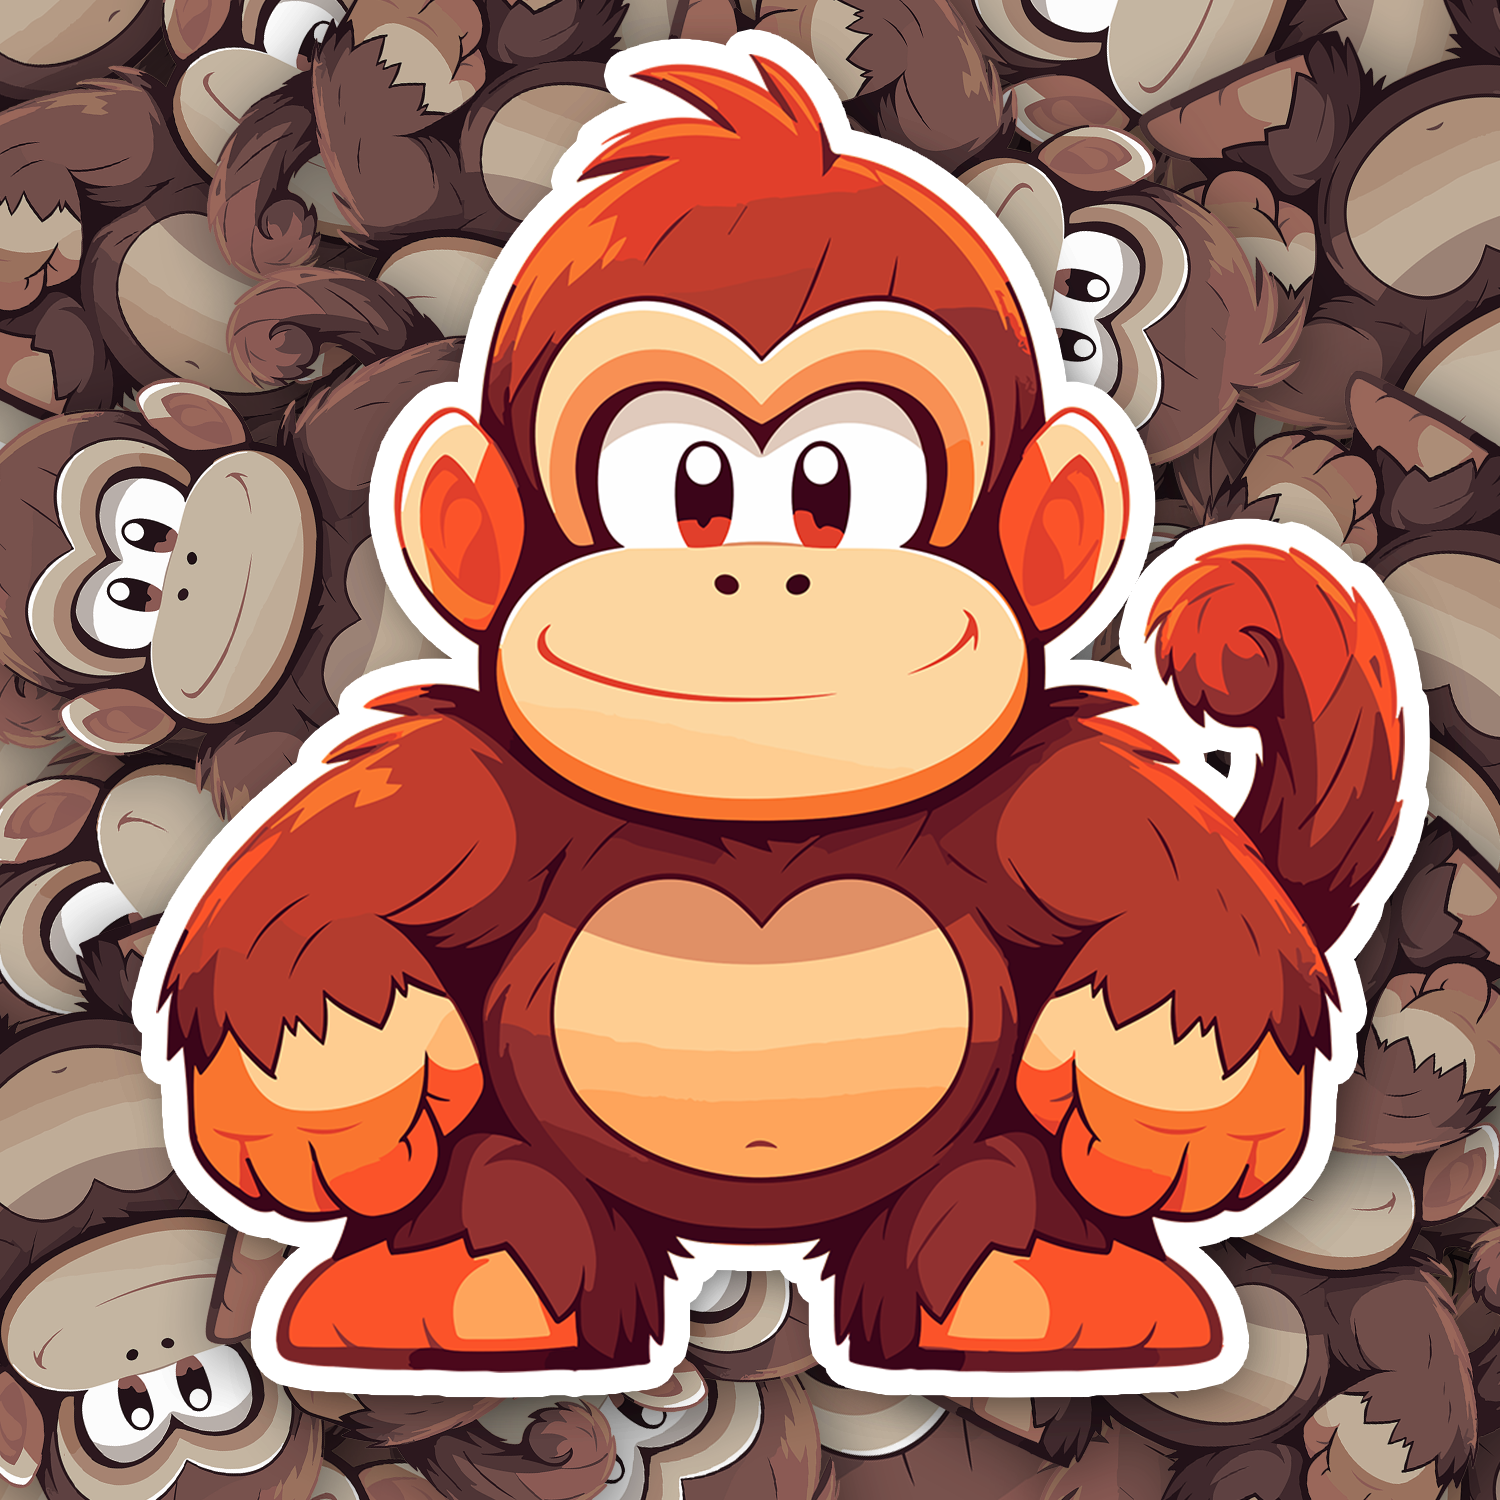 Chibi Donkey Kong Sticker - Turbo Vinyl